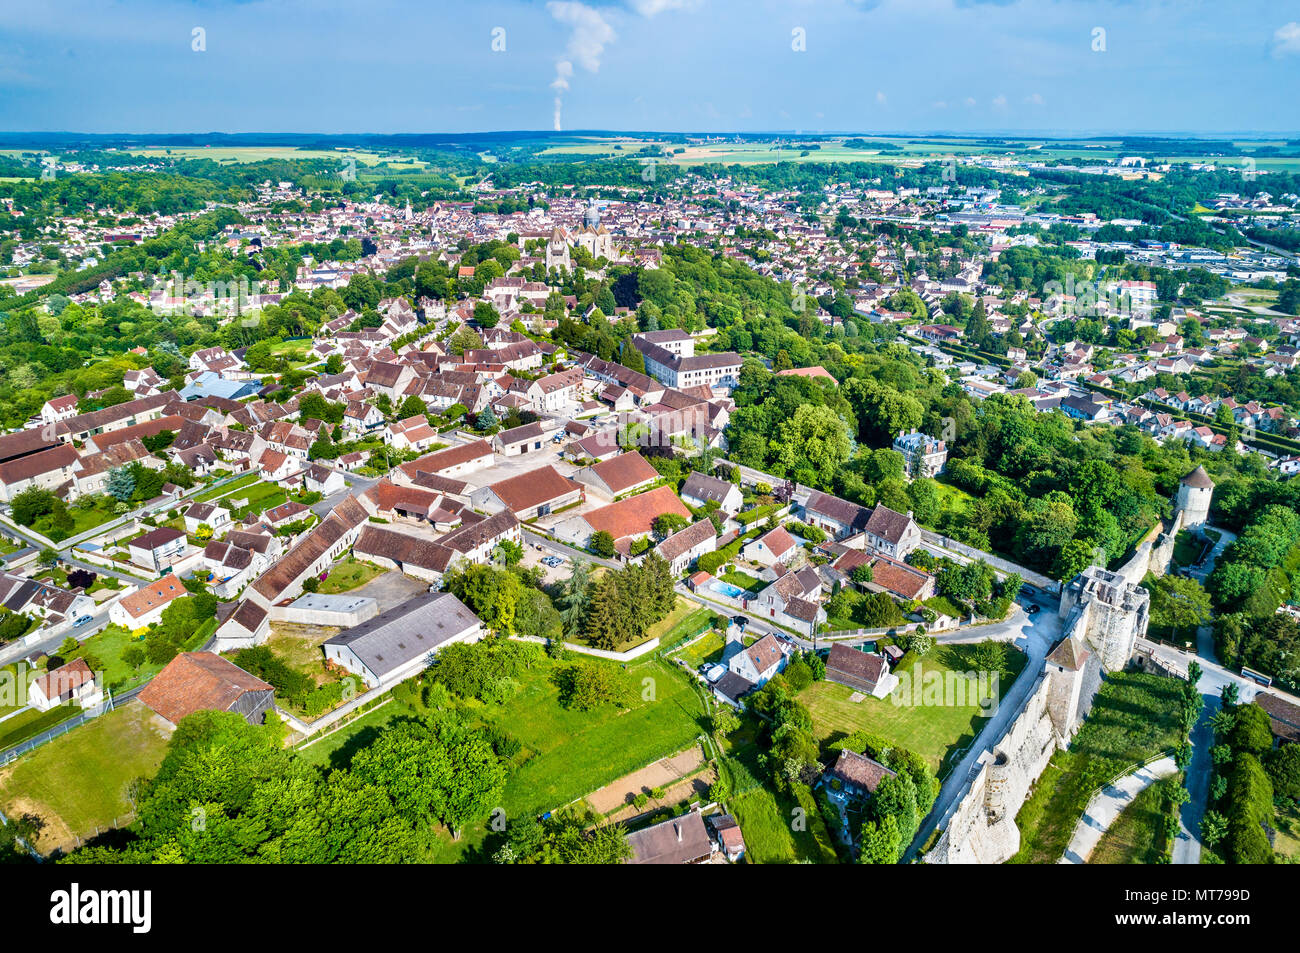 Vue aérienne de Provins, ville de foire médiévale et site du patrimoine mondial de l'UNESCO en France Banque D'Images